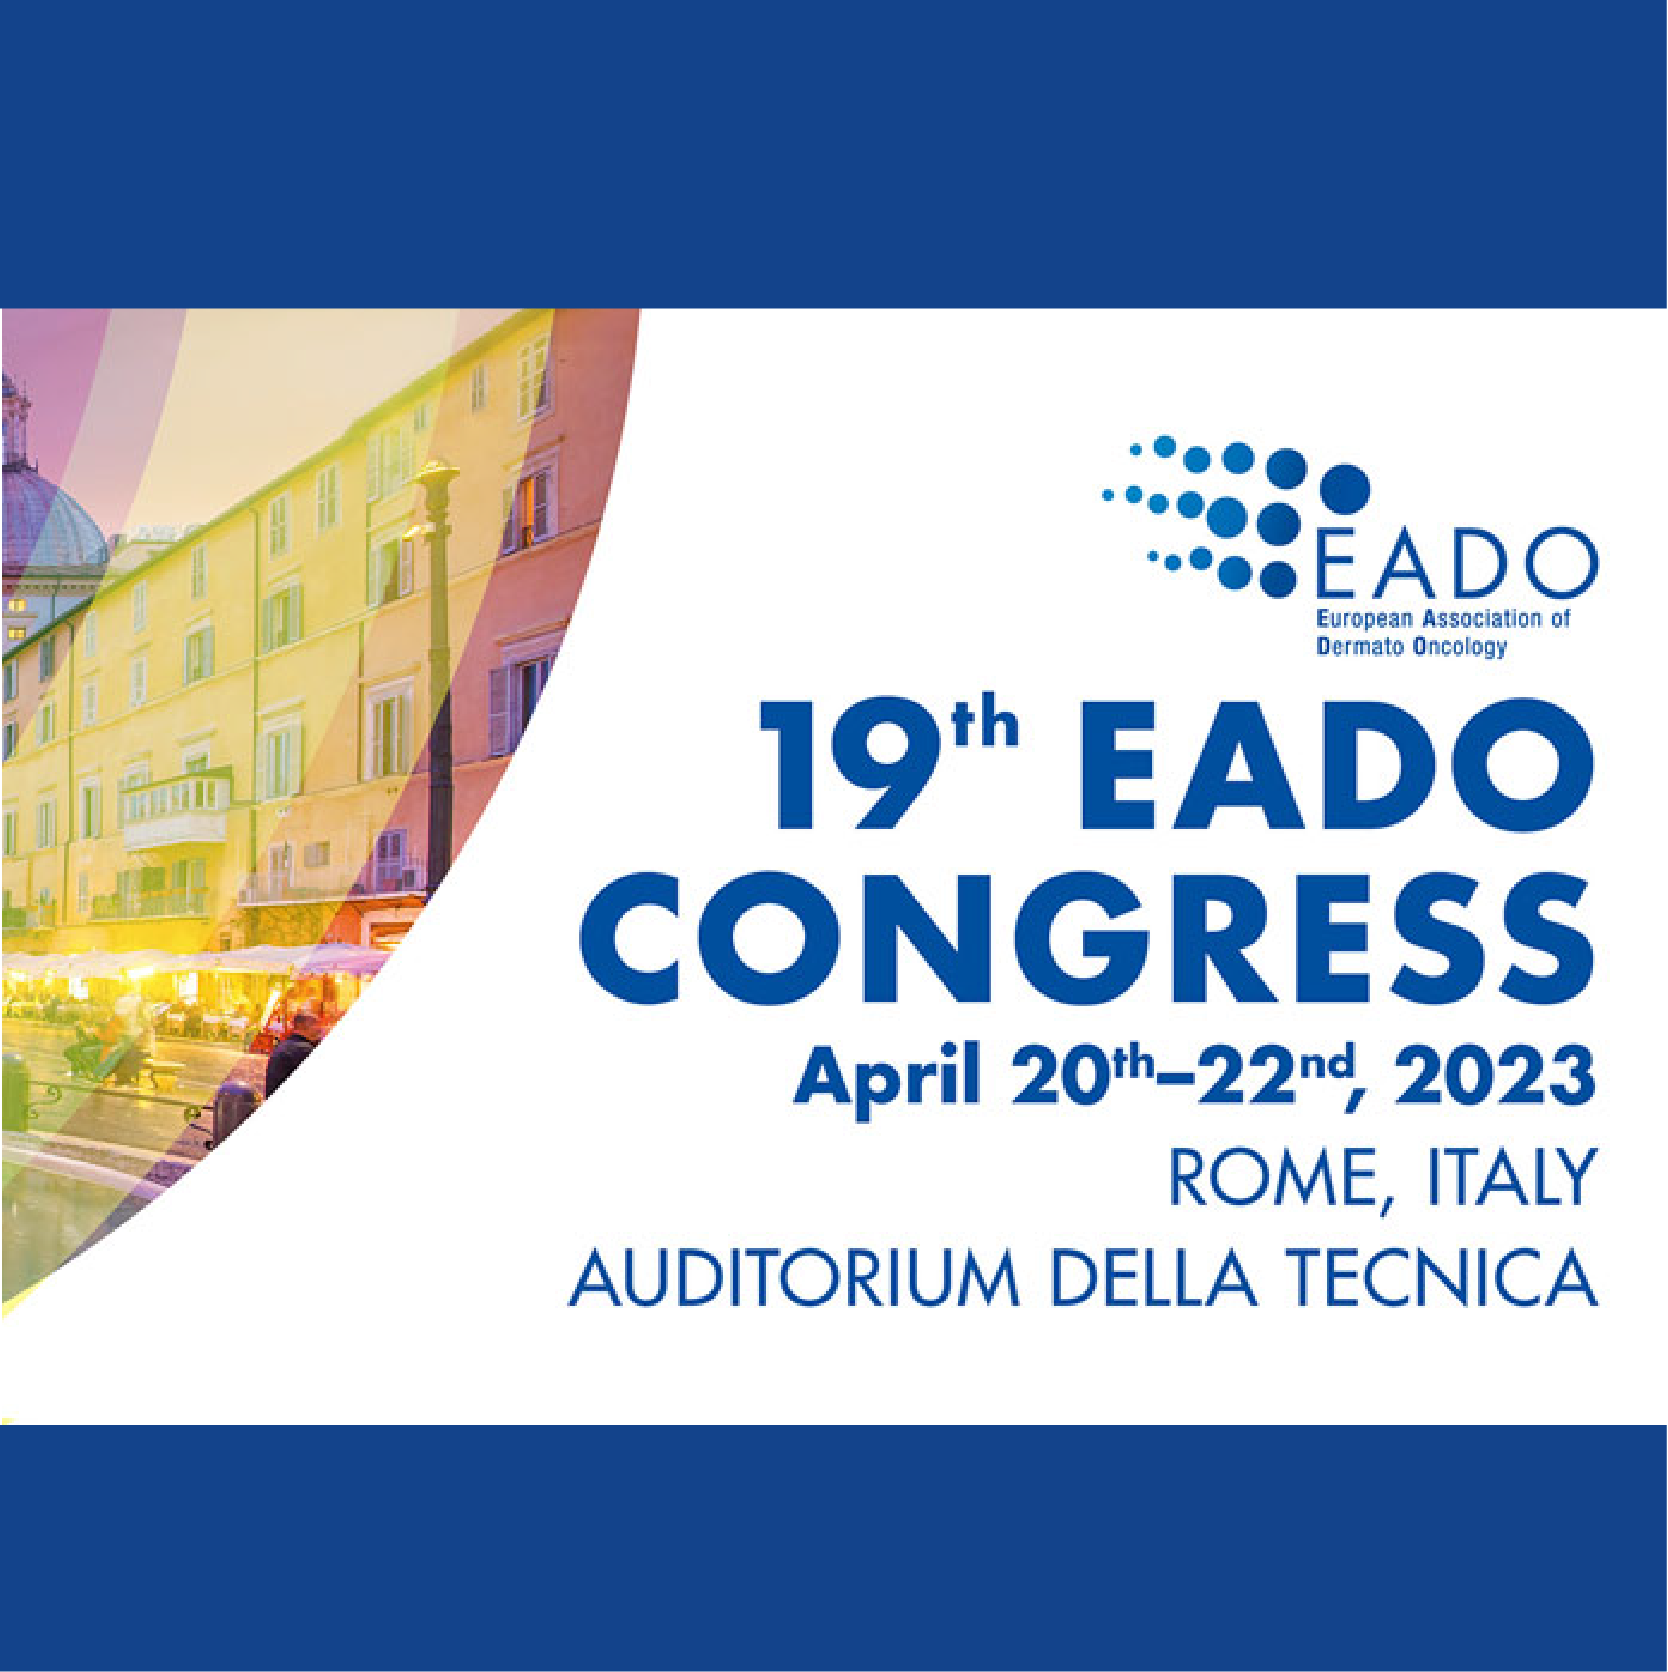 THE 19TH European Association of Dermato-Oncology CONGRESS - EADO 2023